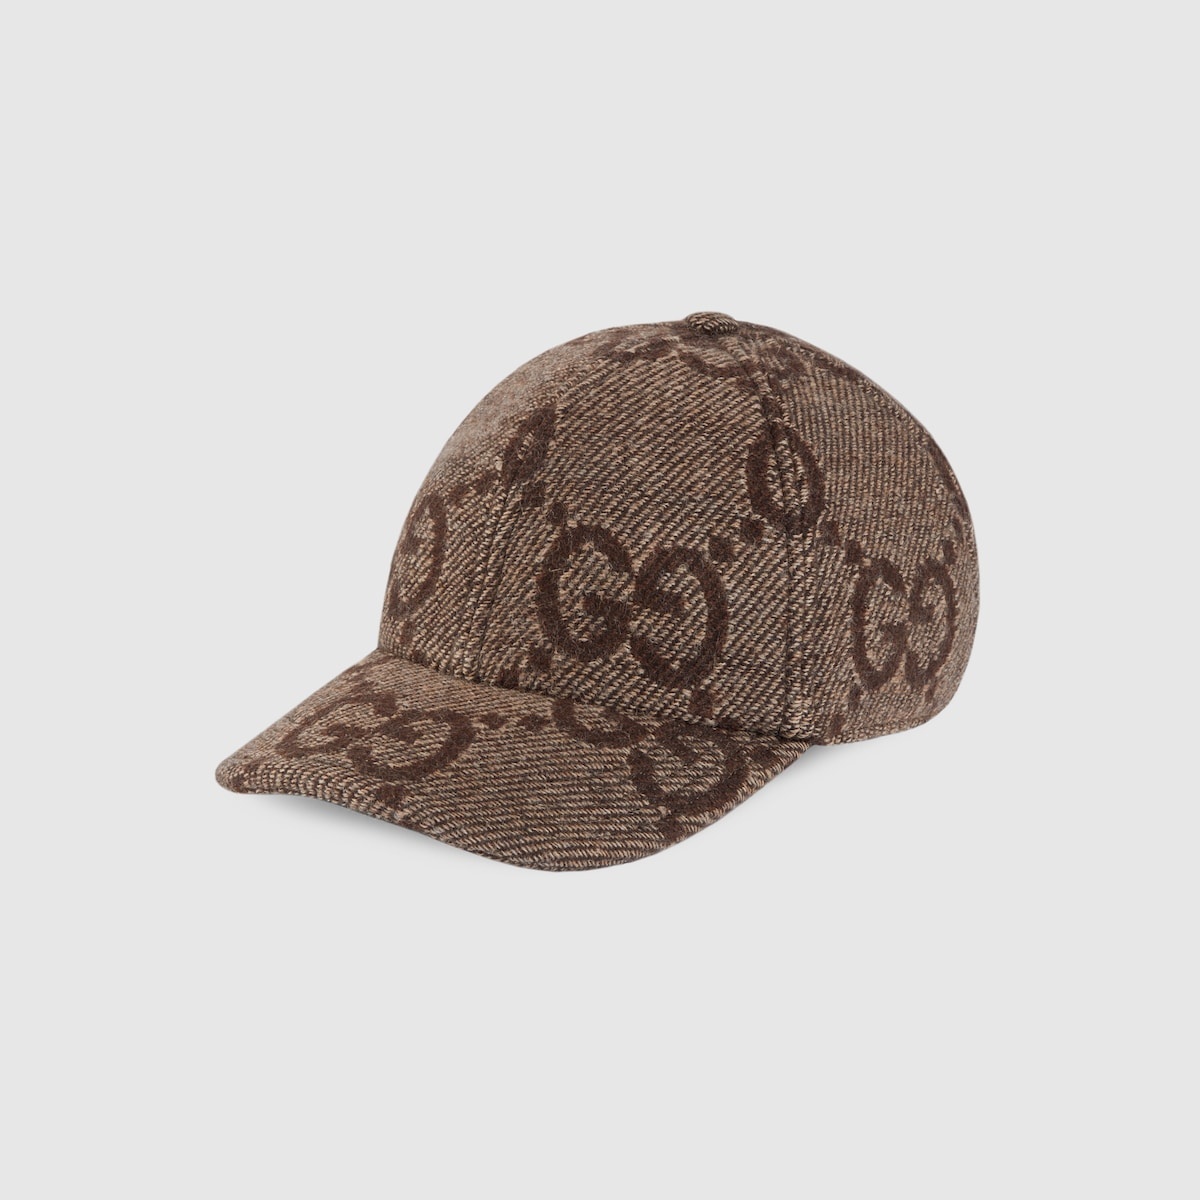 Jumbo GG wool baseball hat - 1